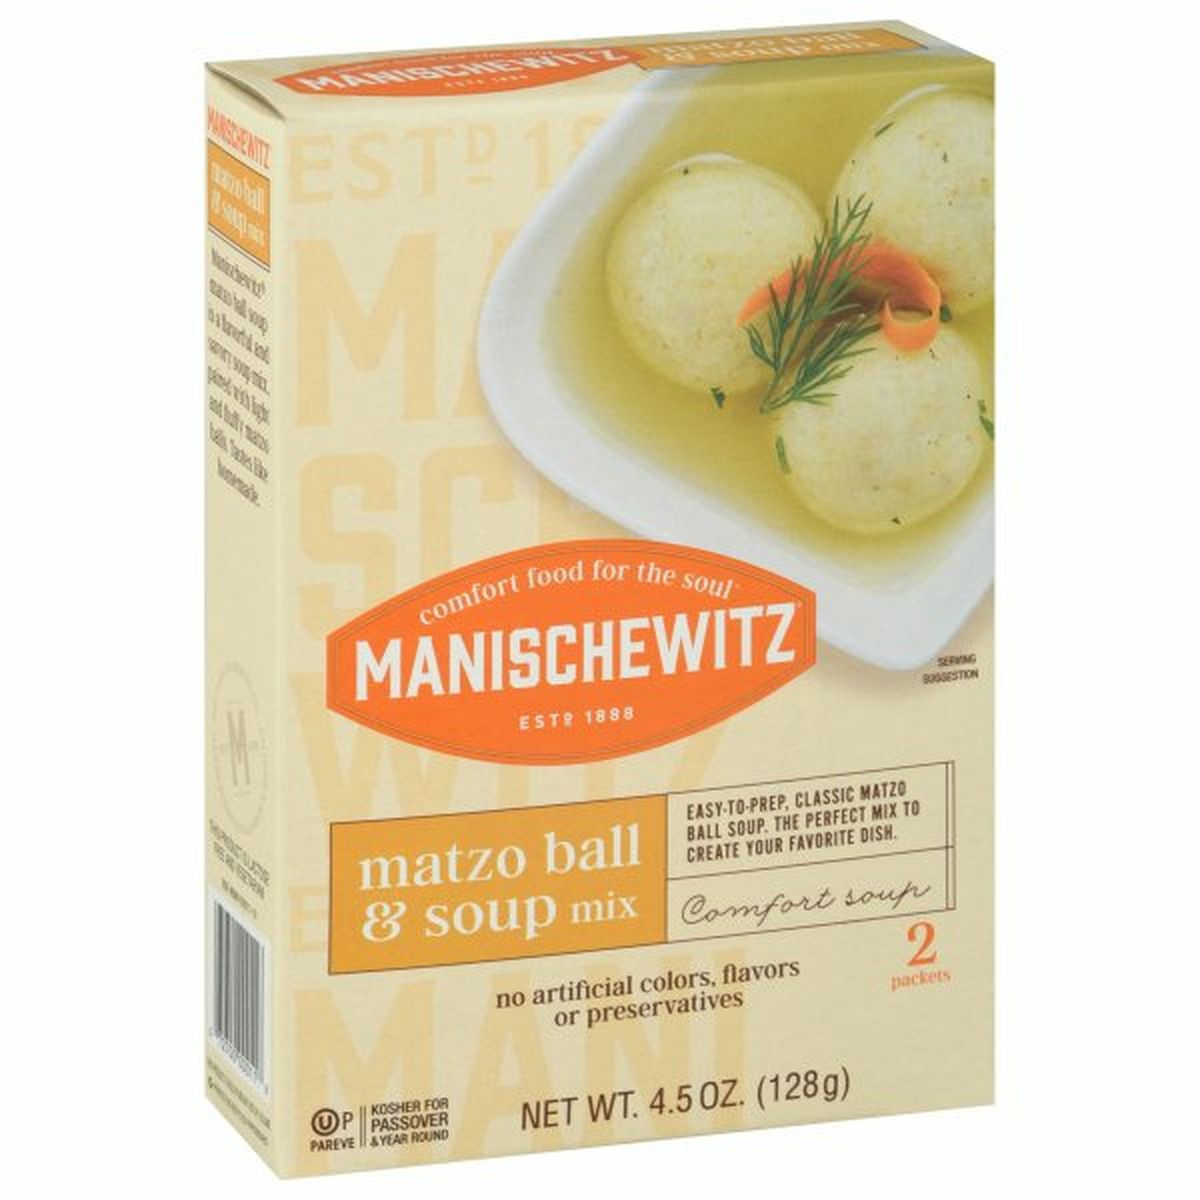 Calories in Manischewitz Matzo Ball & Soup Mix